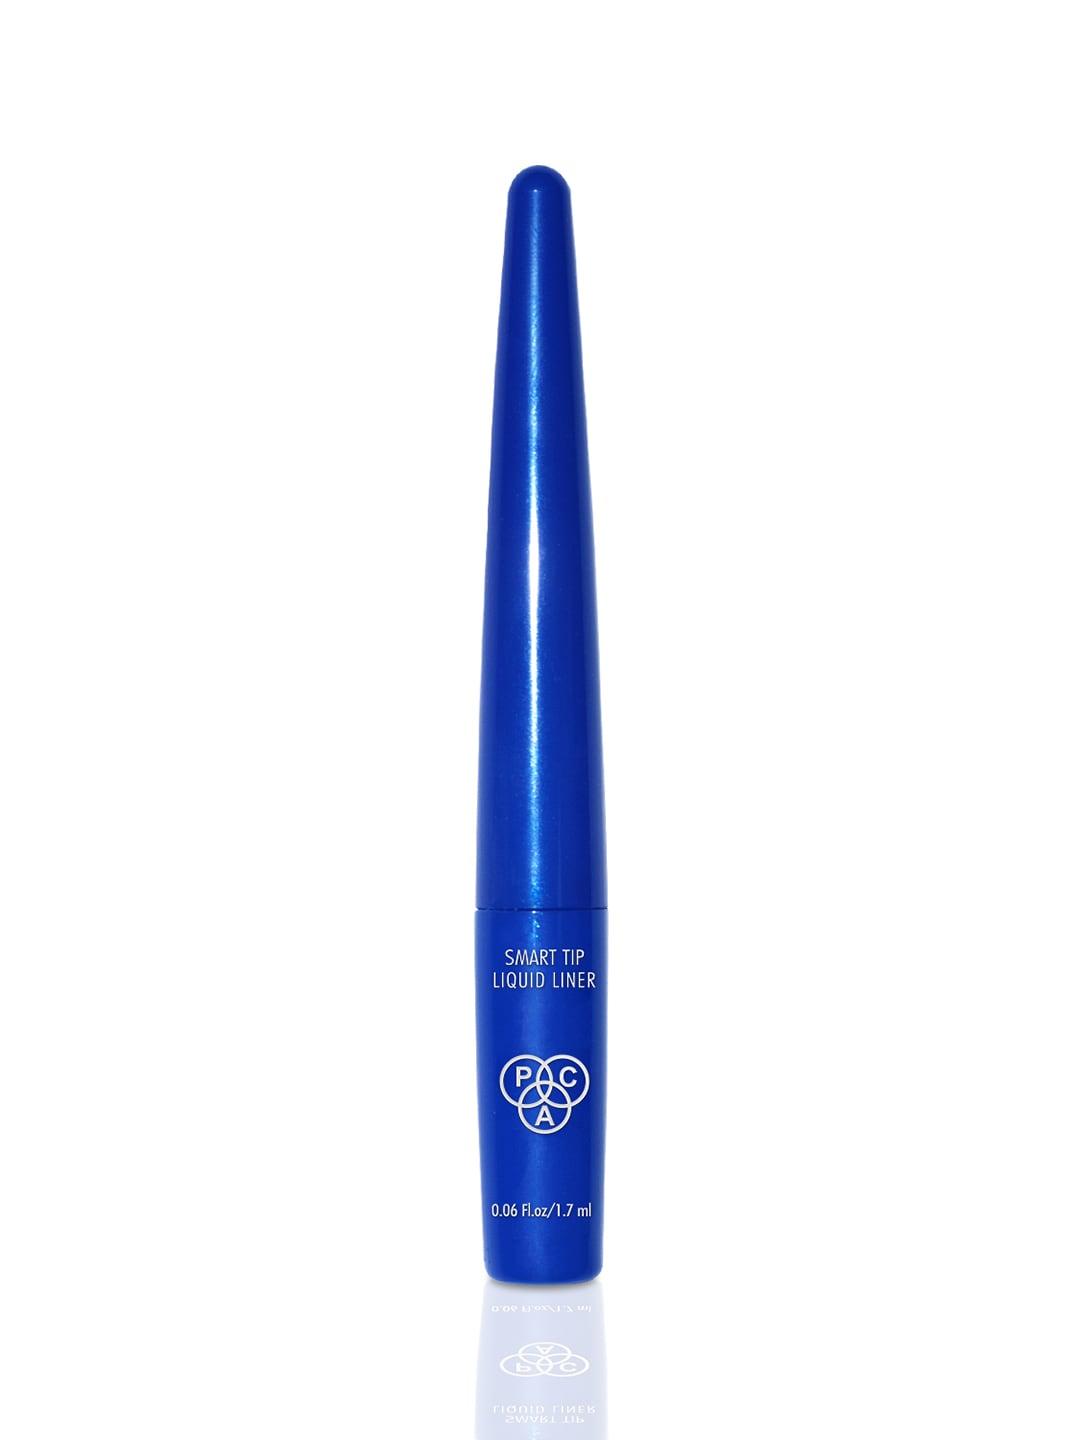 PAC Smart Tip Long Wearing Waterproof Liquid Liner 1.7ml - Electric Blue